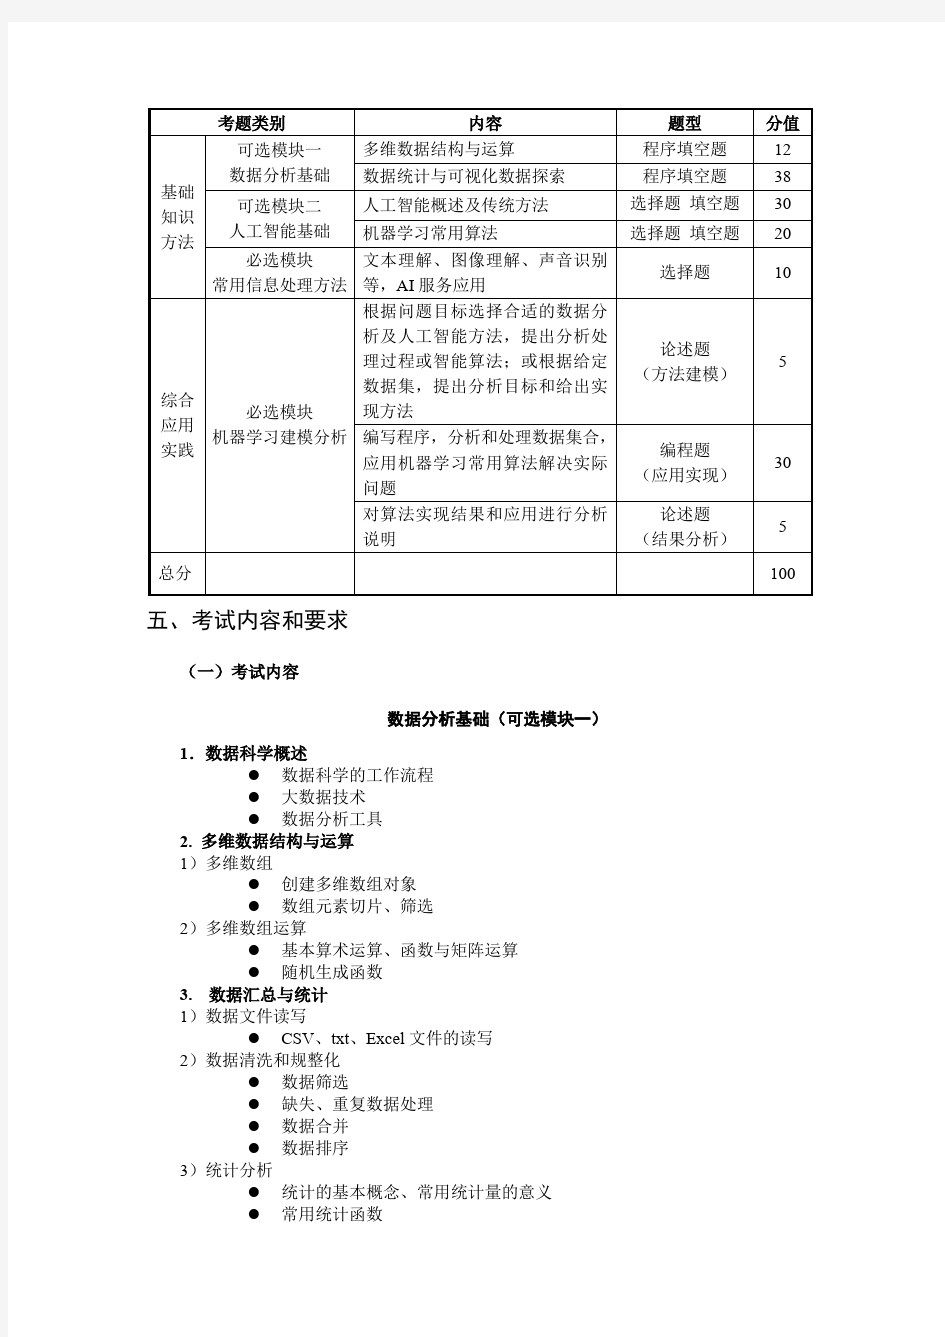 上海市高等学校计算机等级考试(三级)